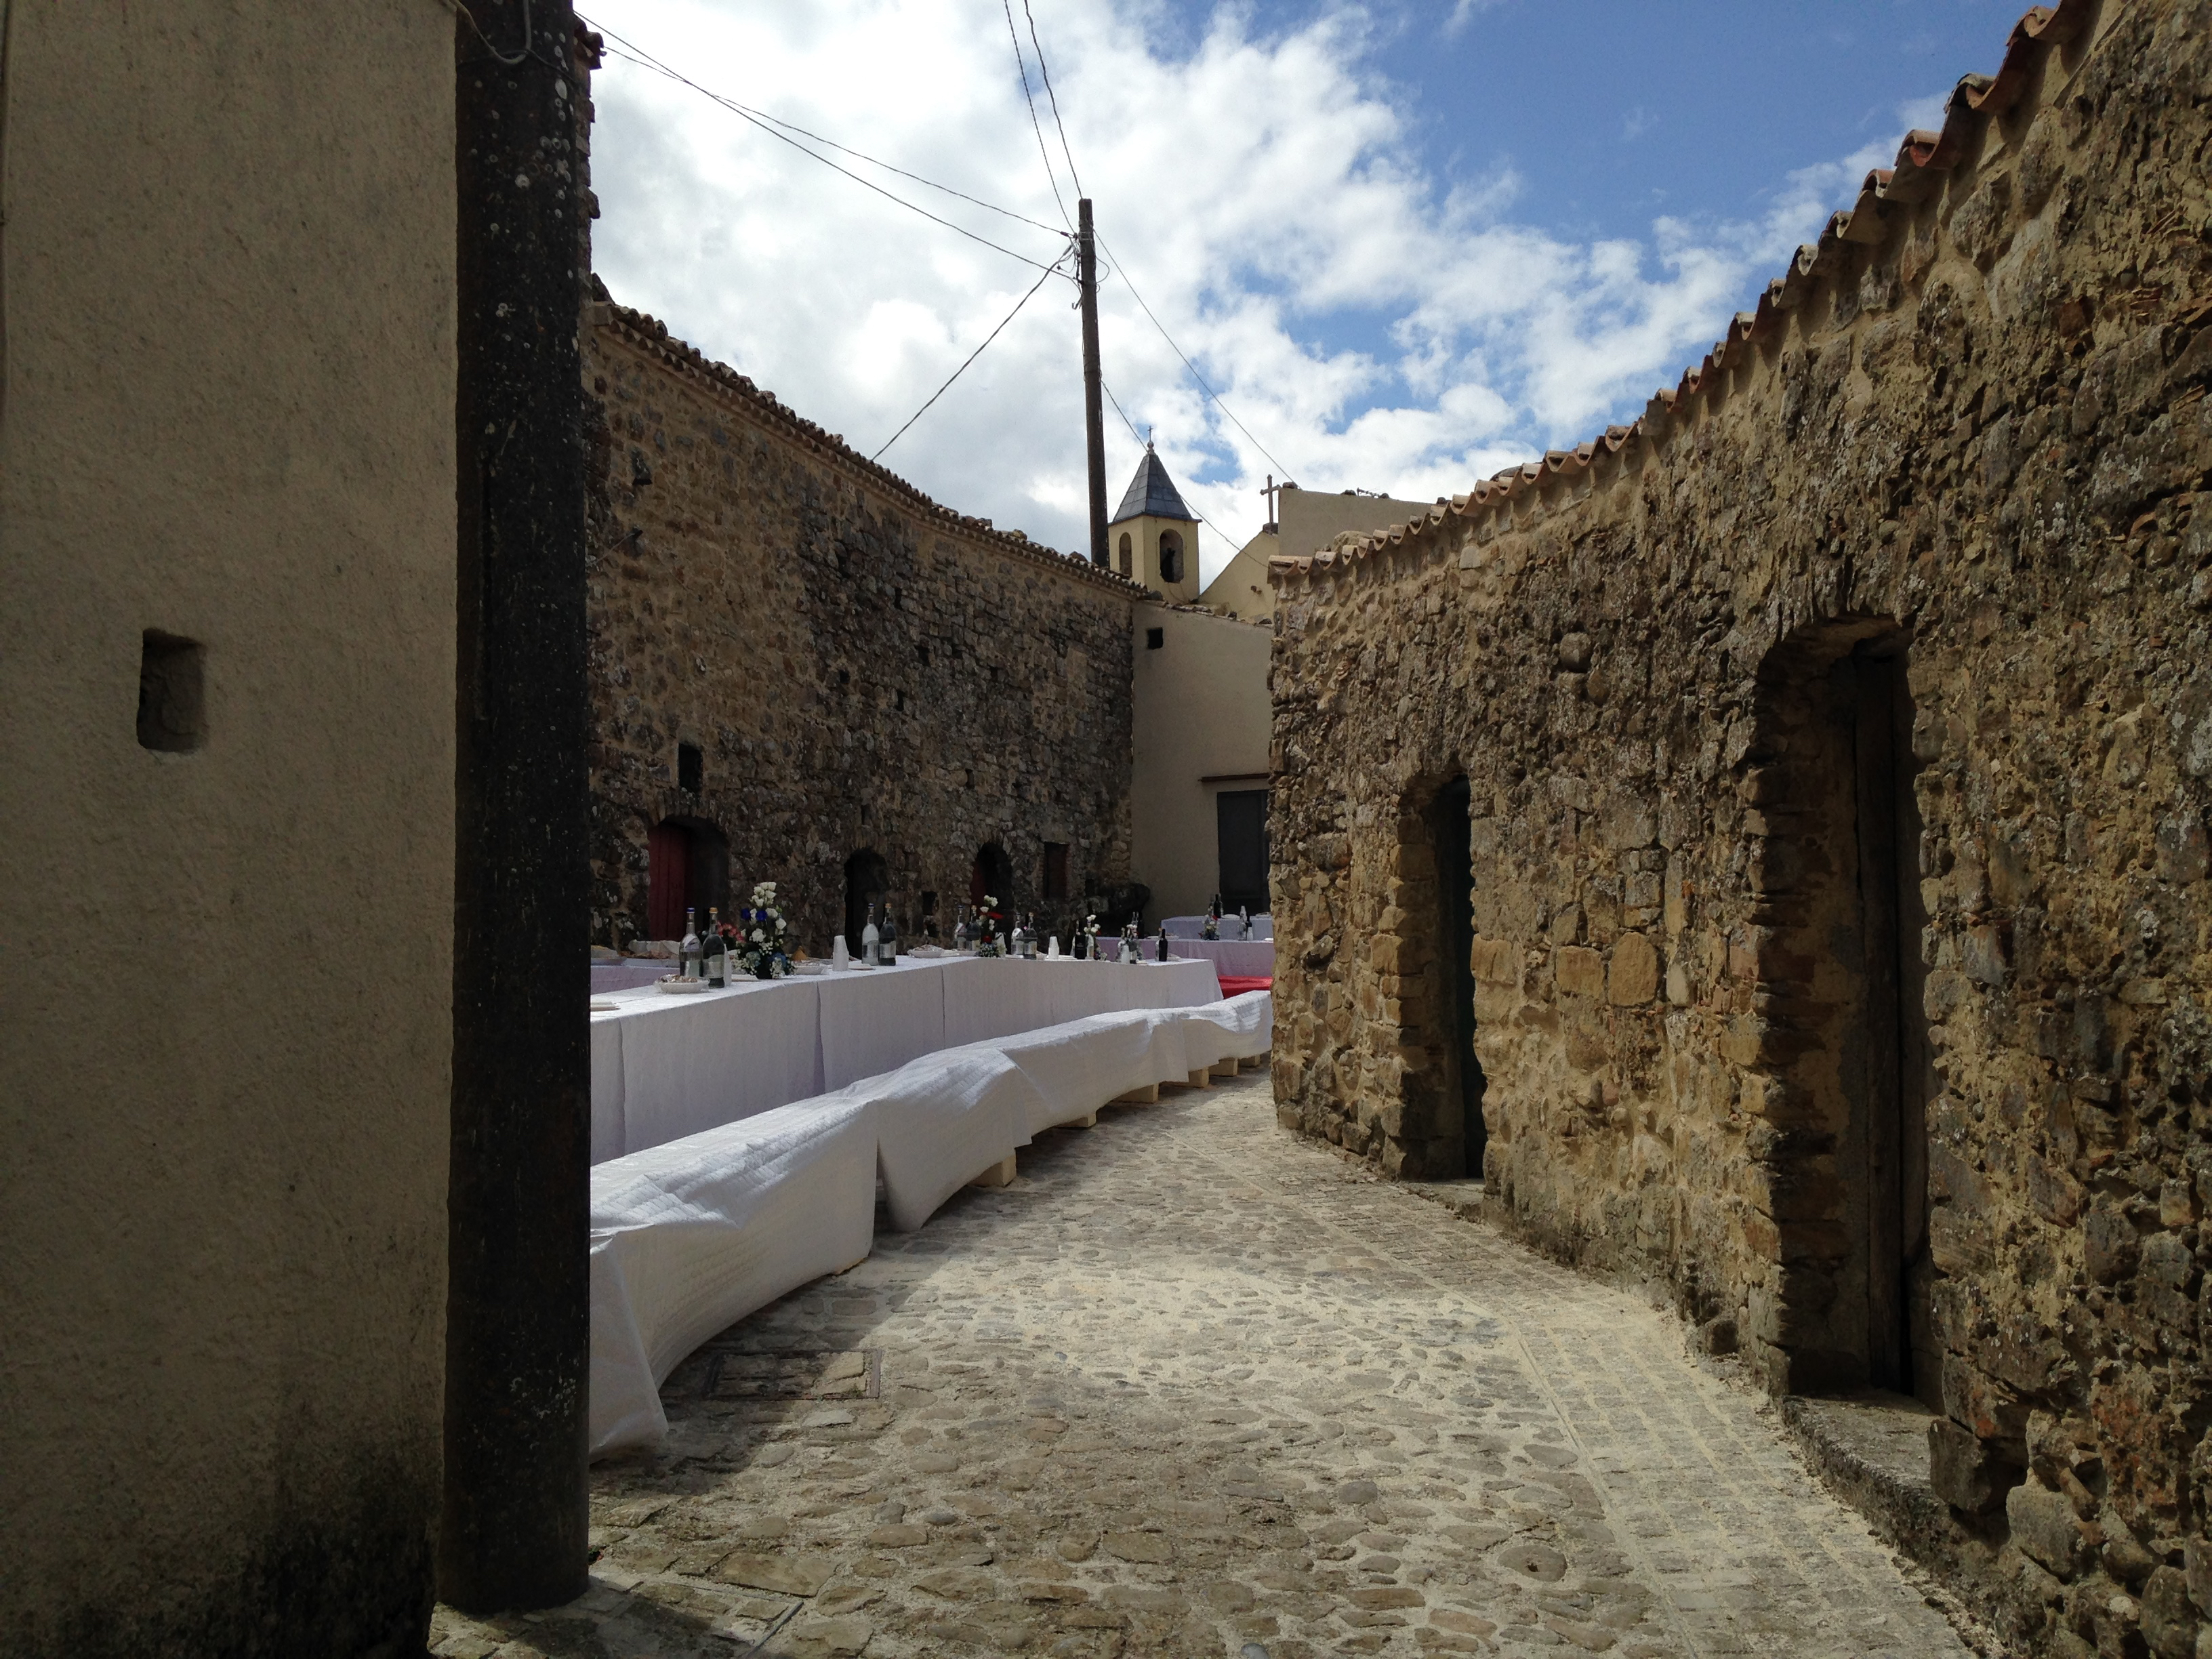 ruelle bordée de caves en pierre, tables avec nappes blanches dressées au milieu